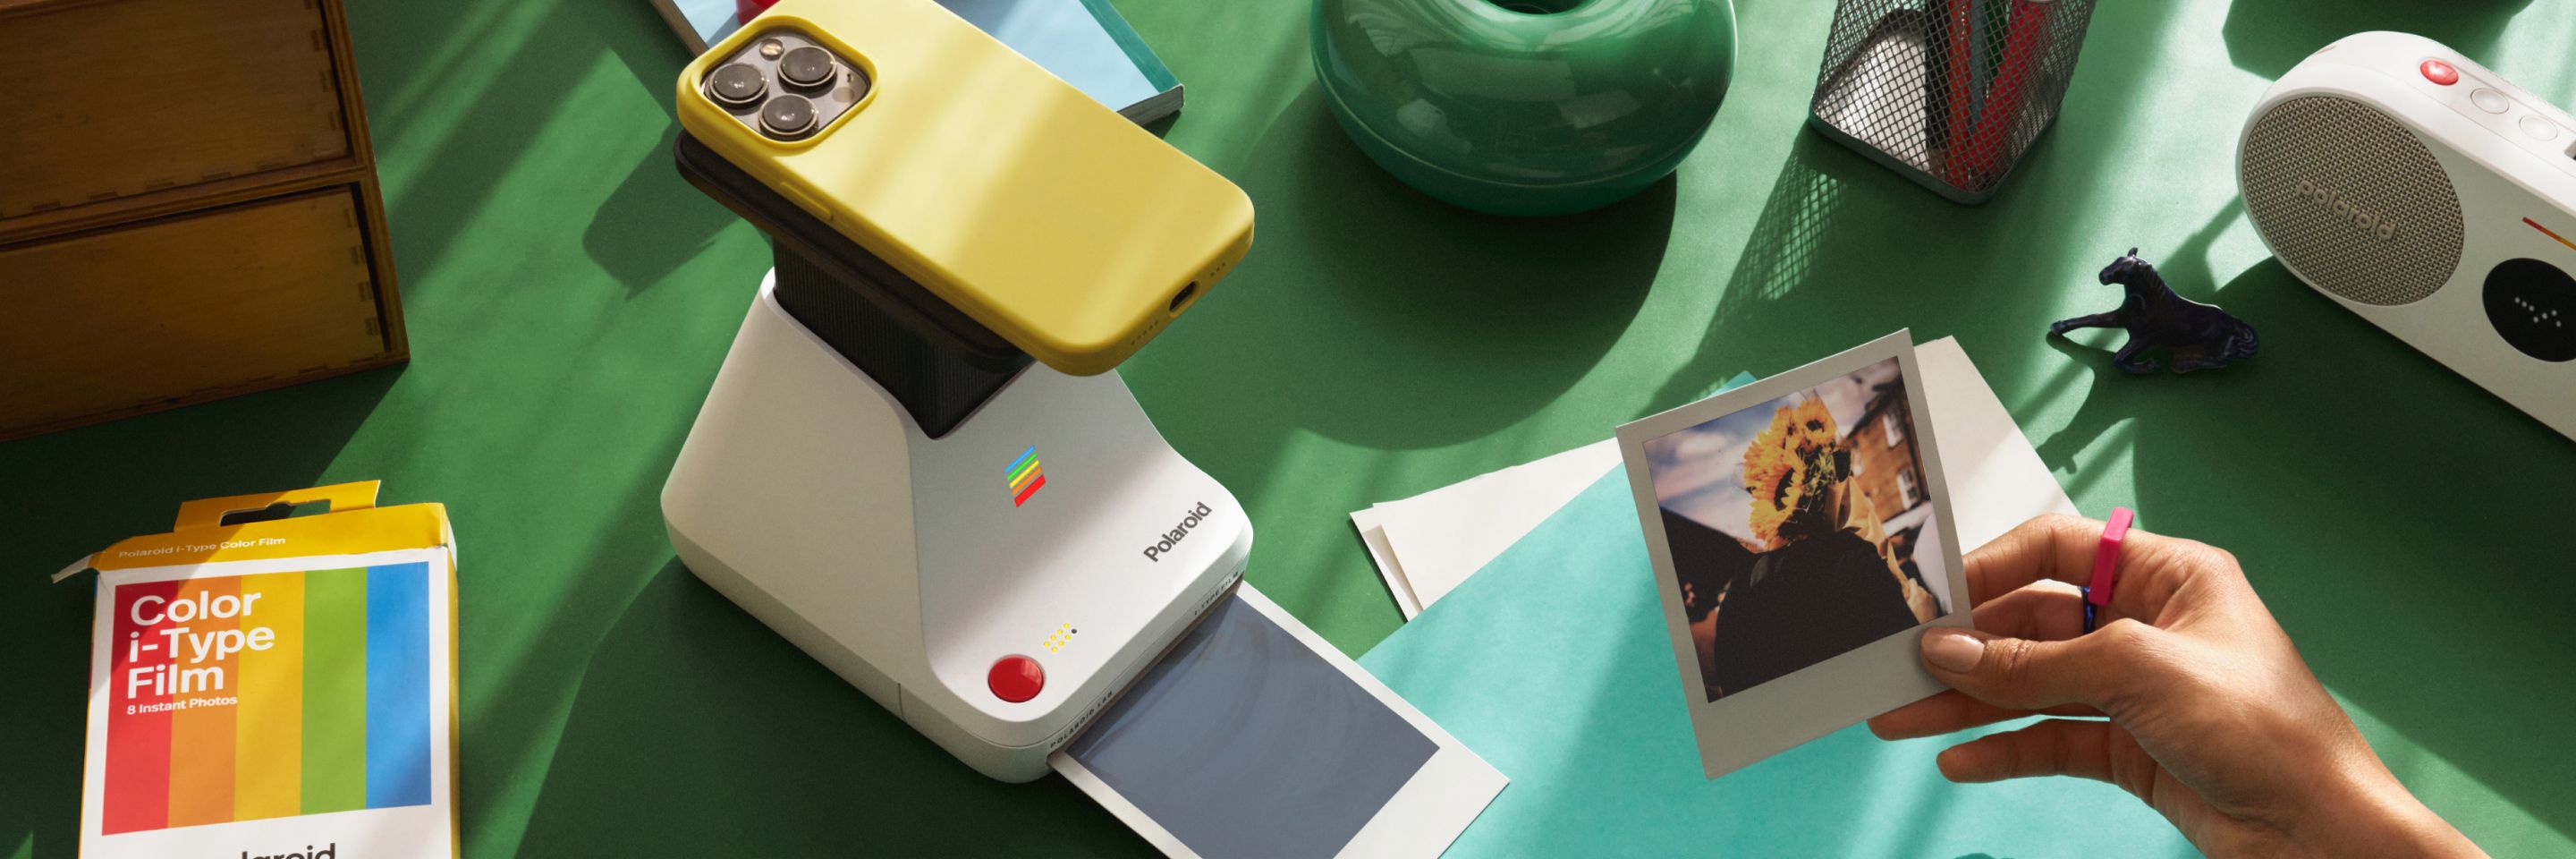 Impresora Lab de Polaroid